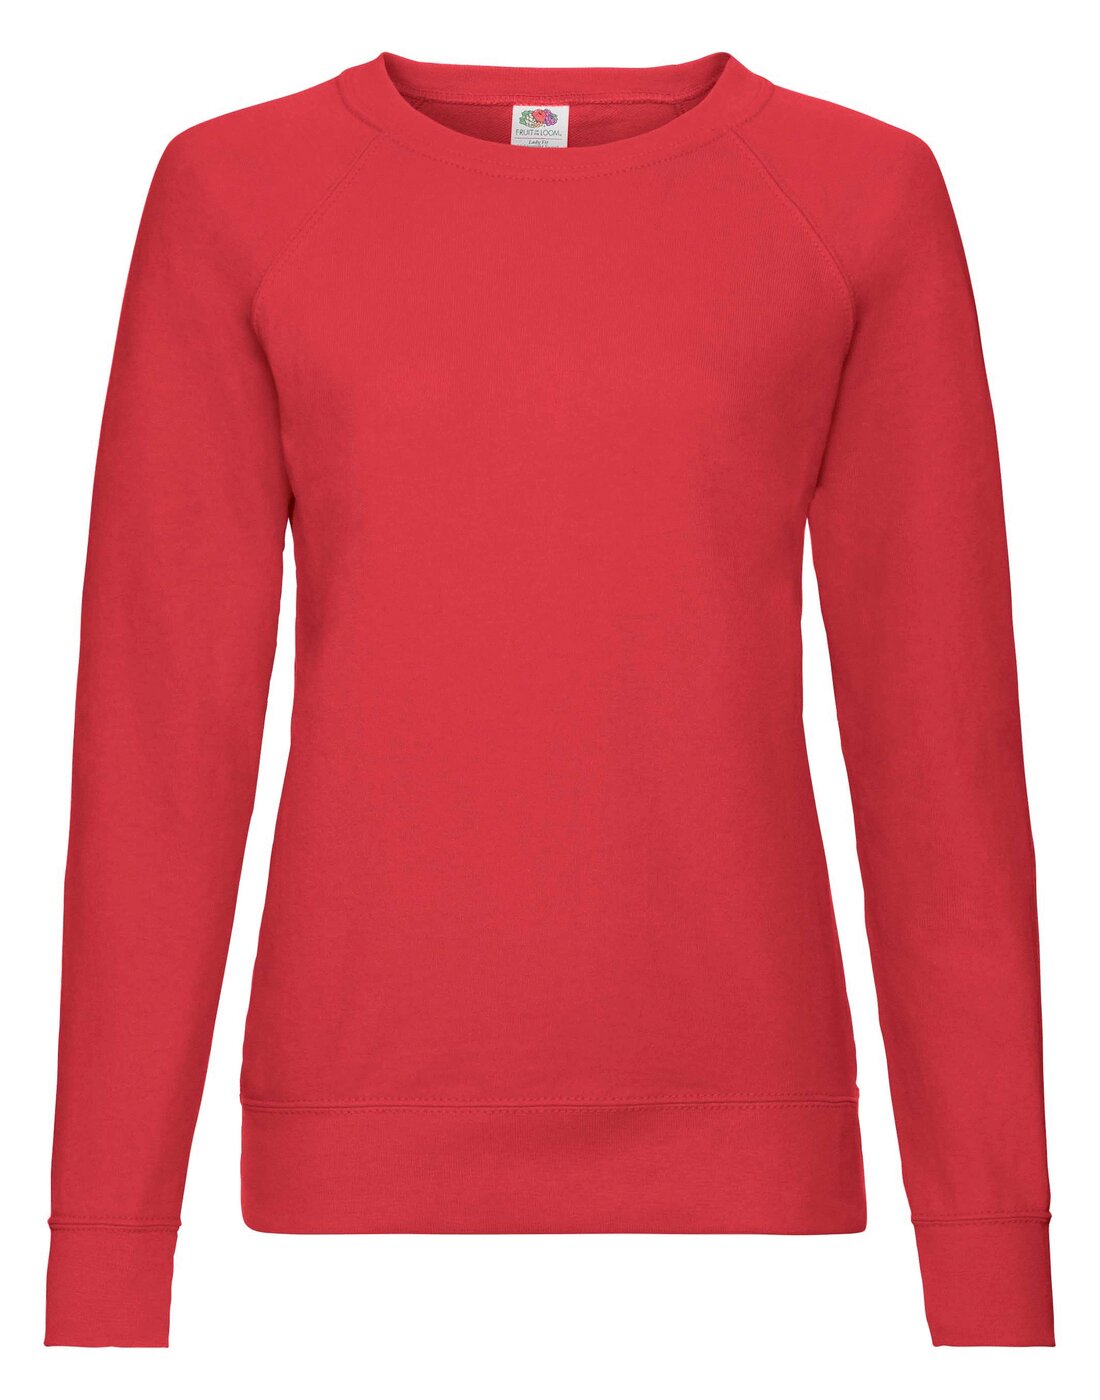 Fruit of the Loom Ladies Lightweight Raglan Sweatshirt - Red